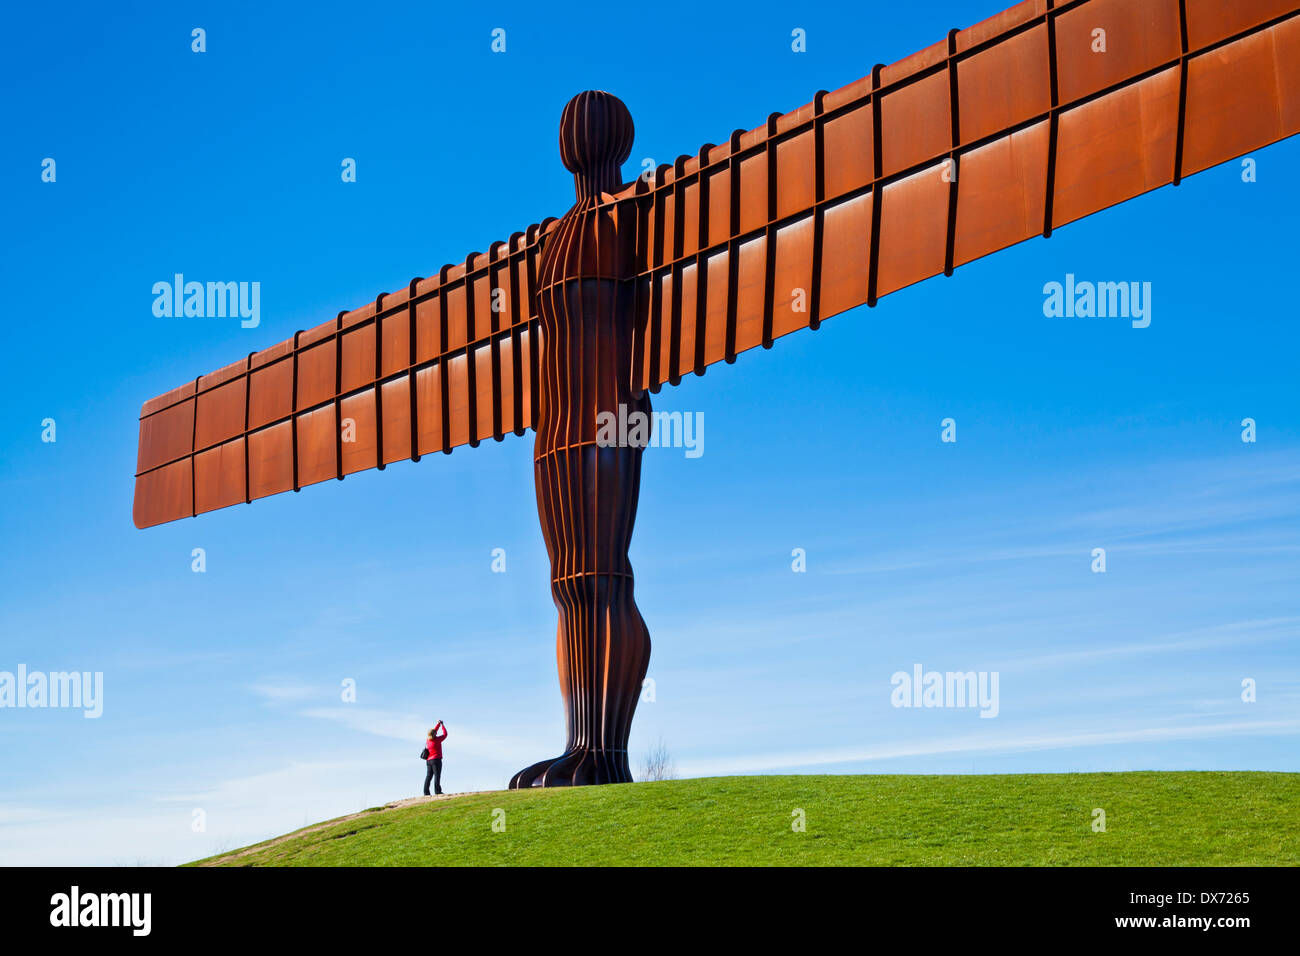 Personne photographiant l'Ange de la sculpture du Nord par Antony Gormley Gateshead newcastle-upon-tyne angleterre gb royaume-uni europe Banque D'Images